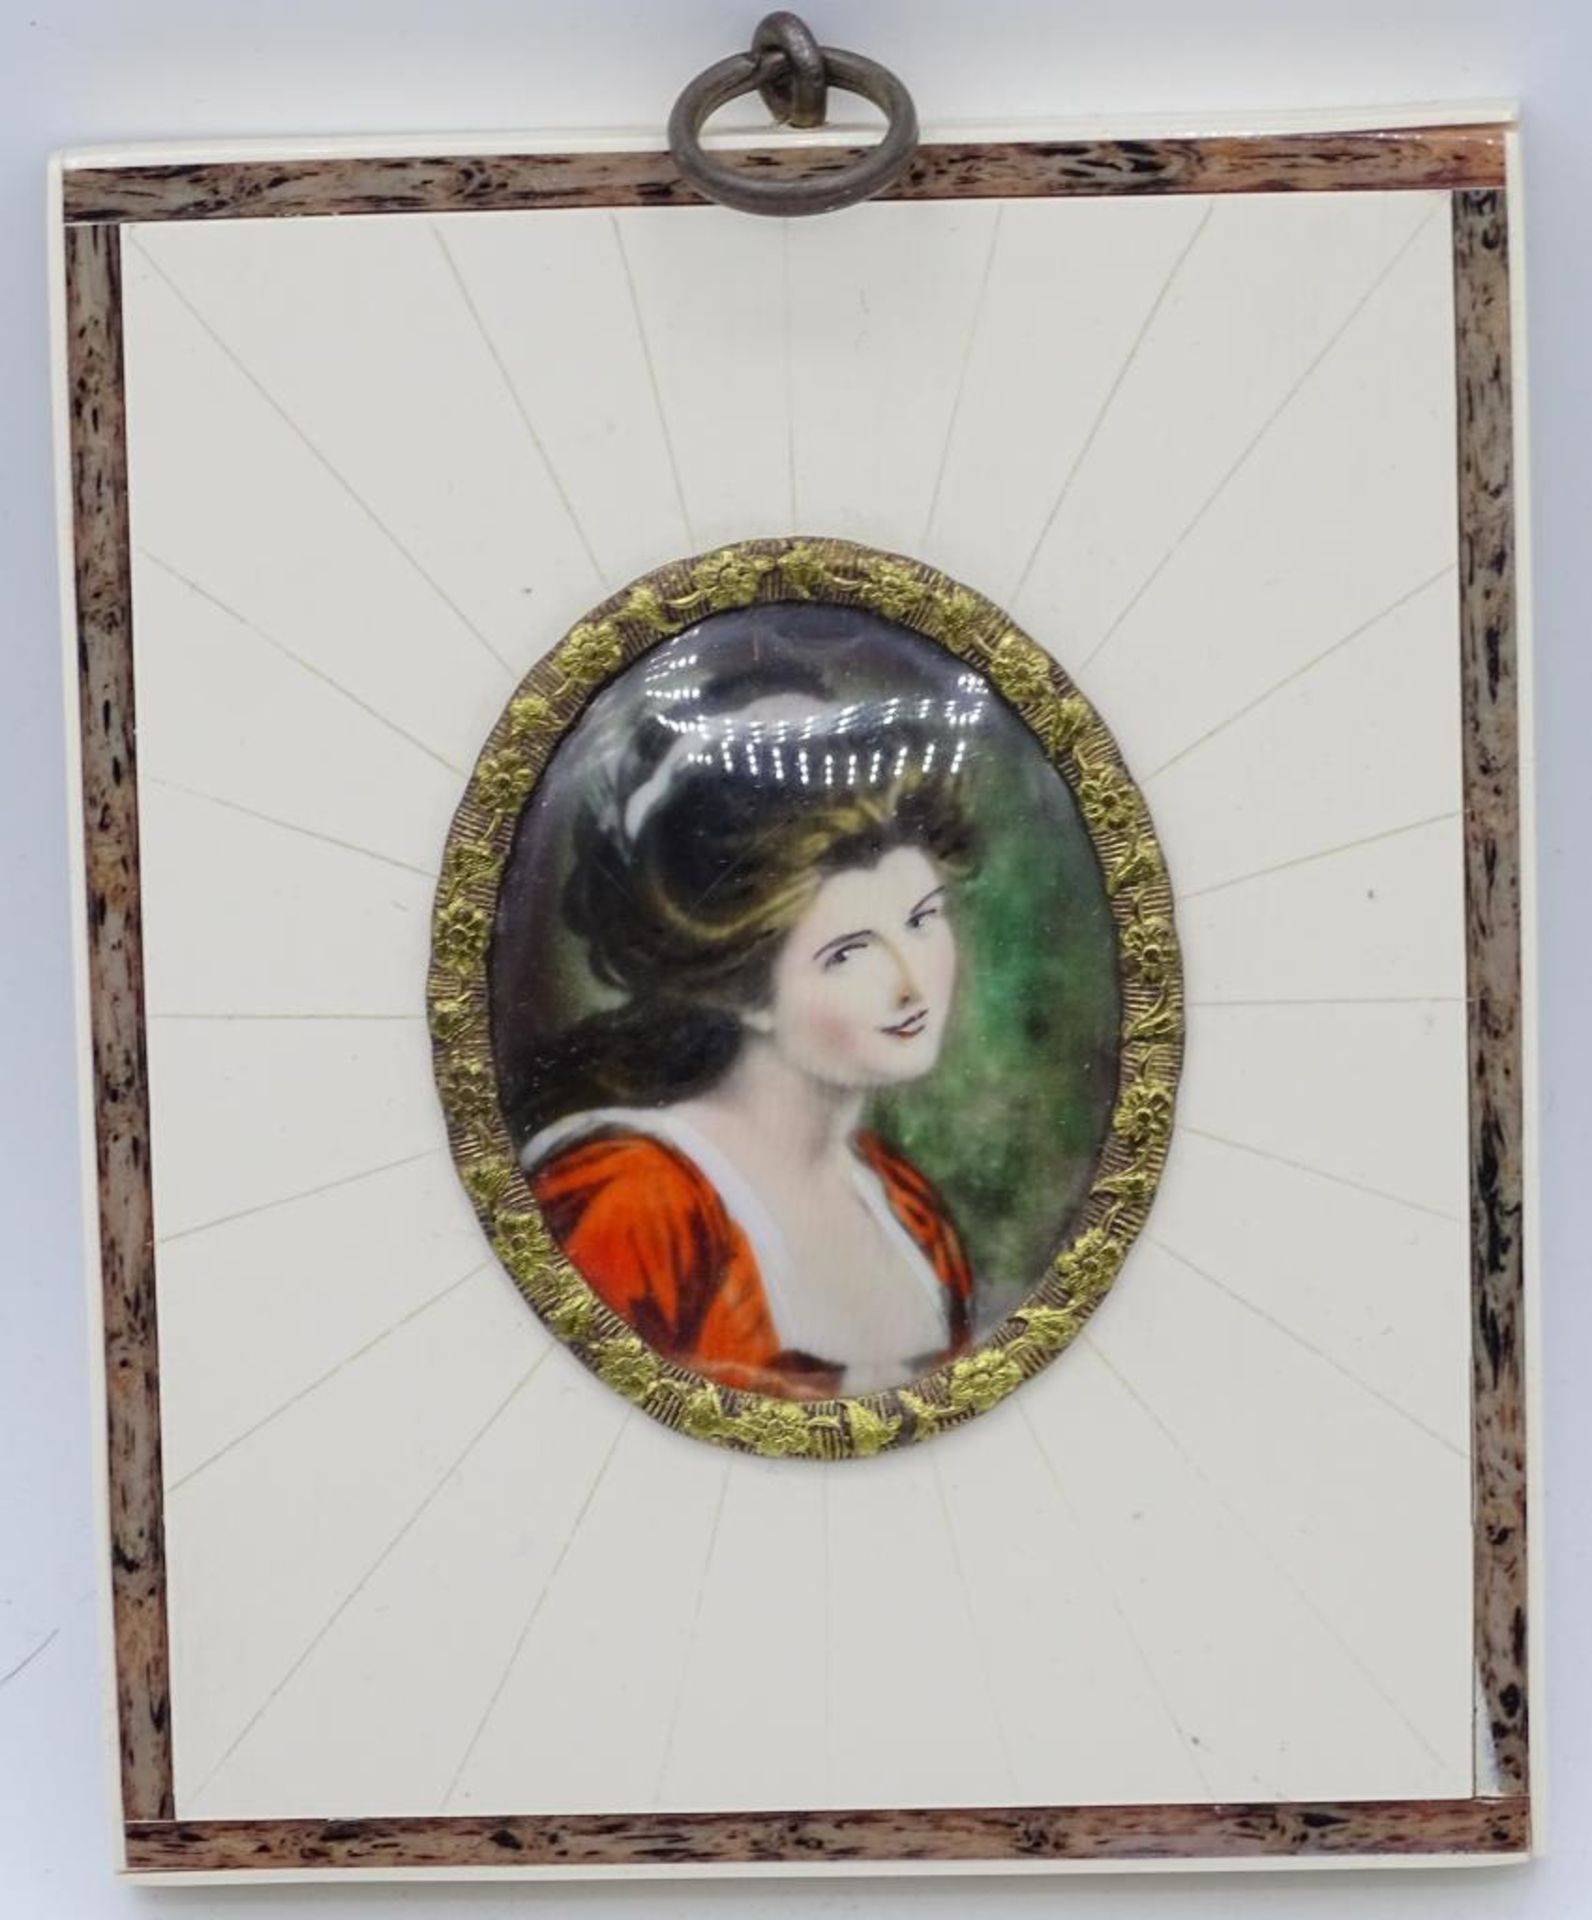 Miniaturmalerei auf Bein?,Damenportrait,10,5x8,5cm- - -22.61 % buyer's premium on the hammer